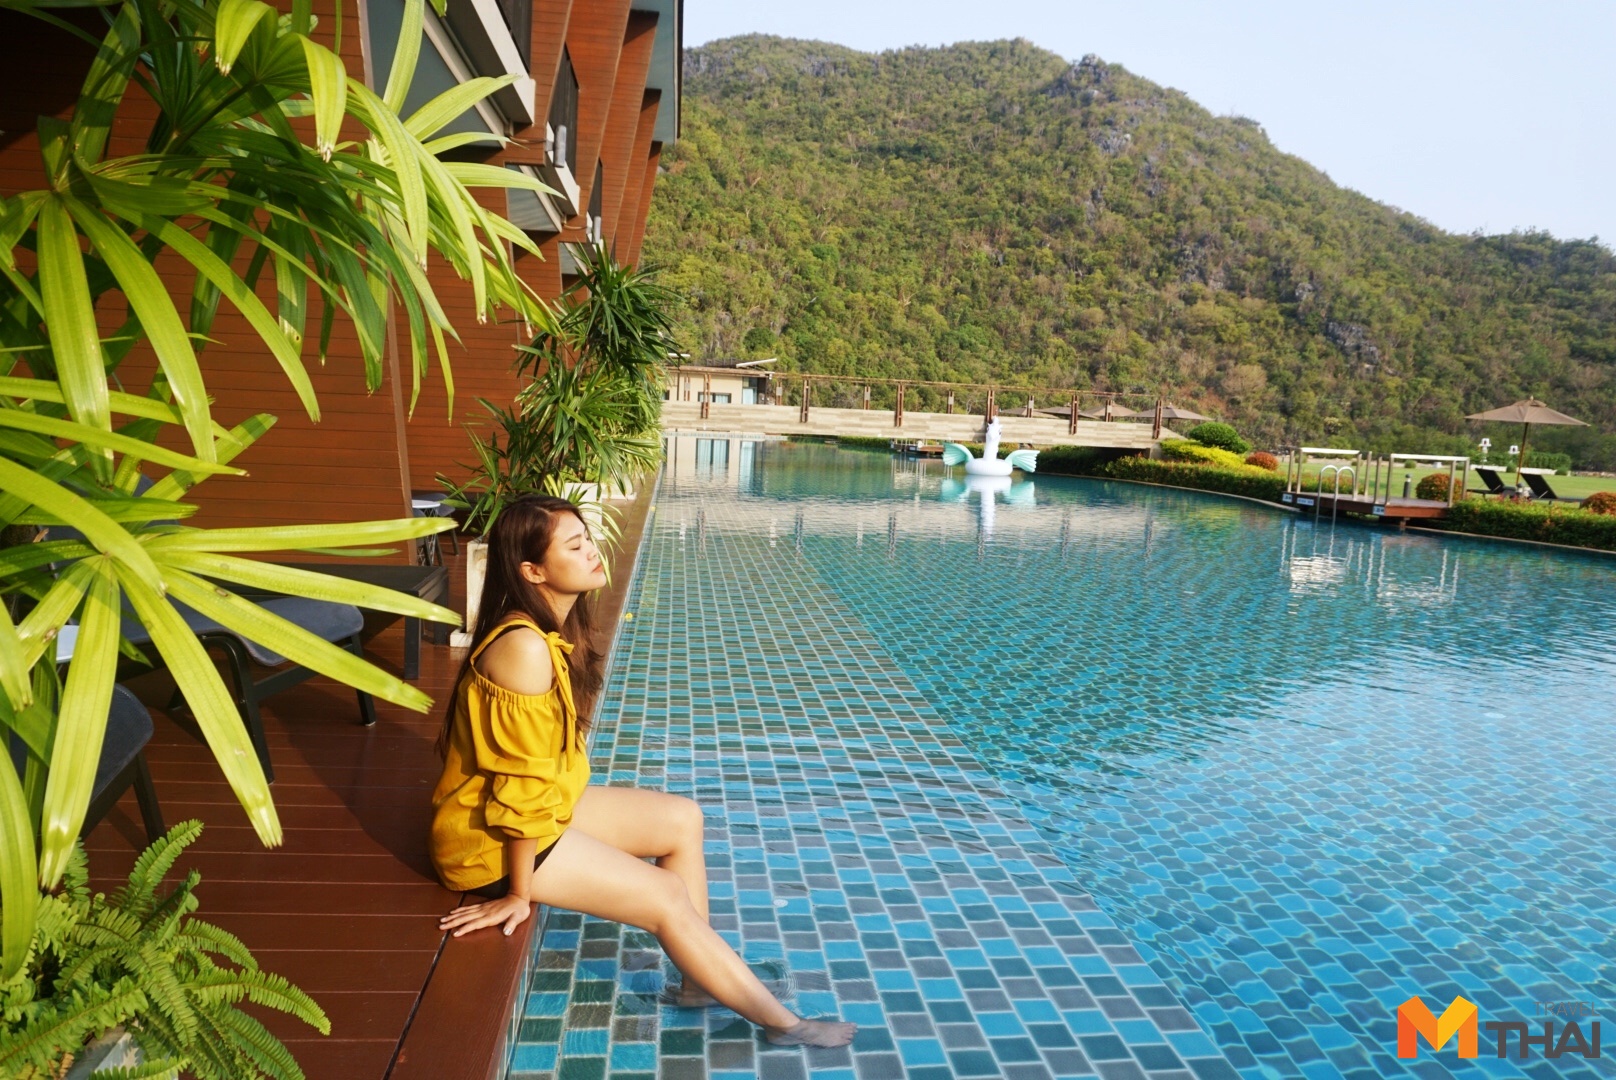 Away Pranburi Beach Resort จ.ประจวบคีรีขันธ์ จังหวัดประจวบคีรีขันธ์ ถ้ำพระยานคร ที่พักติดทะเล ที่พักปราณบุรี ที่พักใกล้กรุงเทพ ที่พักใกล้ชิดธรรมชาติ ที่เที่ยวจังหวัดประจวบคีรีขันธ์ ที่เที่ยวทะเล ที่เที่ยวประจวบคีรีขันธ์ ที่เที่ยวหน้าร้อน ปูละคอน พระที่นั่งคูหาคฤหาสน์ อะเวย์ ปราณบุรี บีช รีสอร์ท เขาสามร้อยยอด